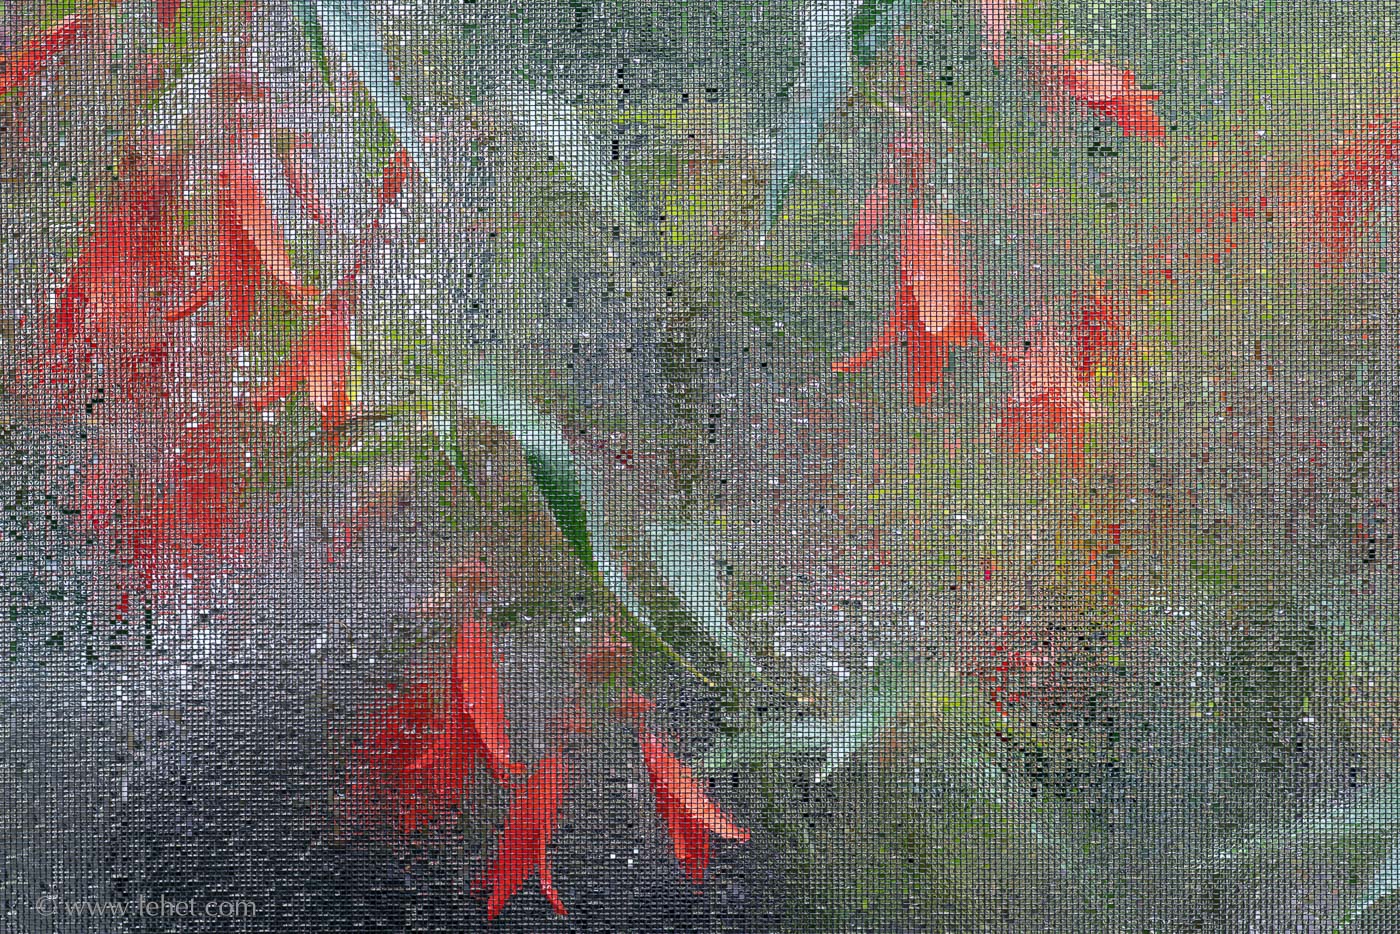 Orange and Scarlet Begonias Through Wet Screen III